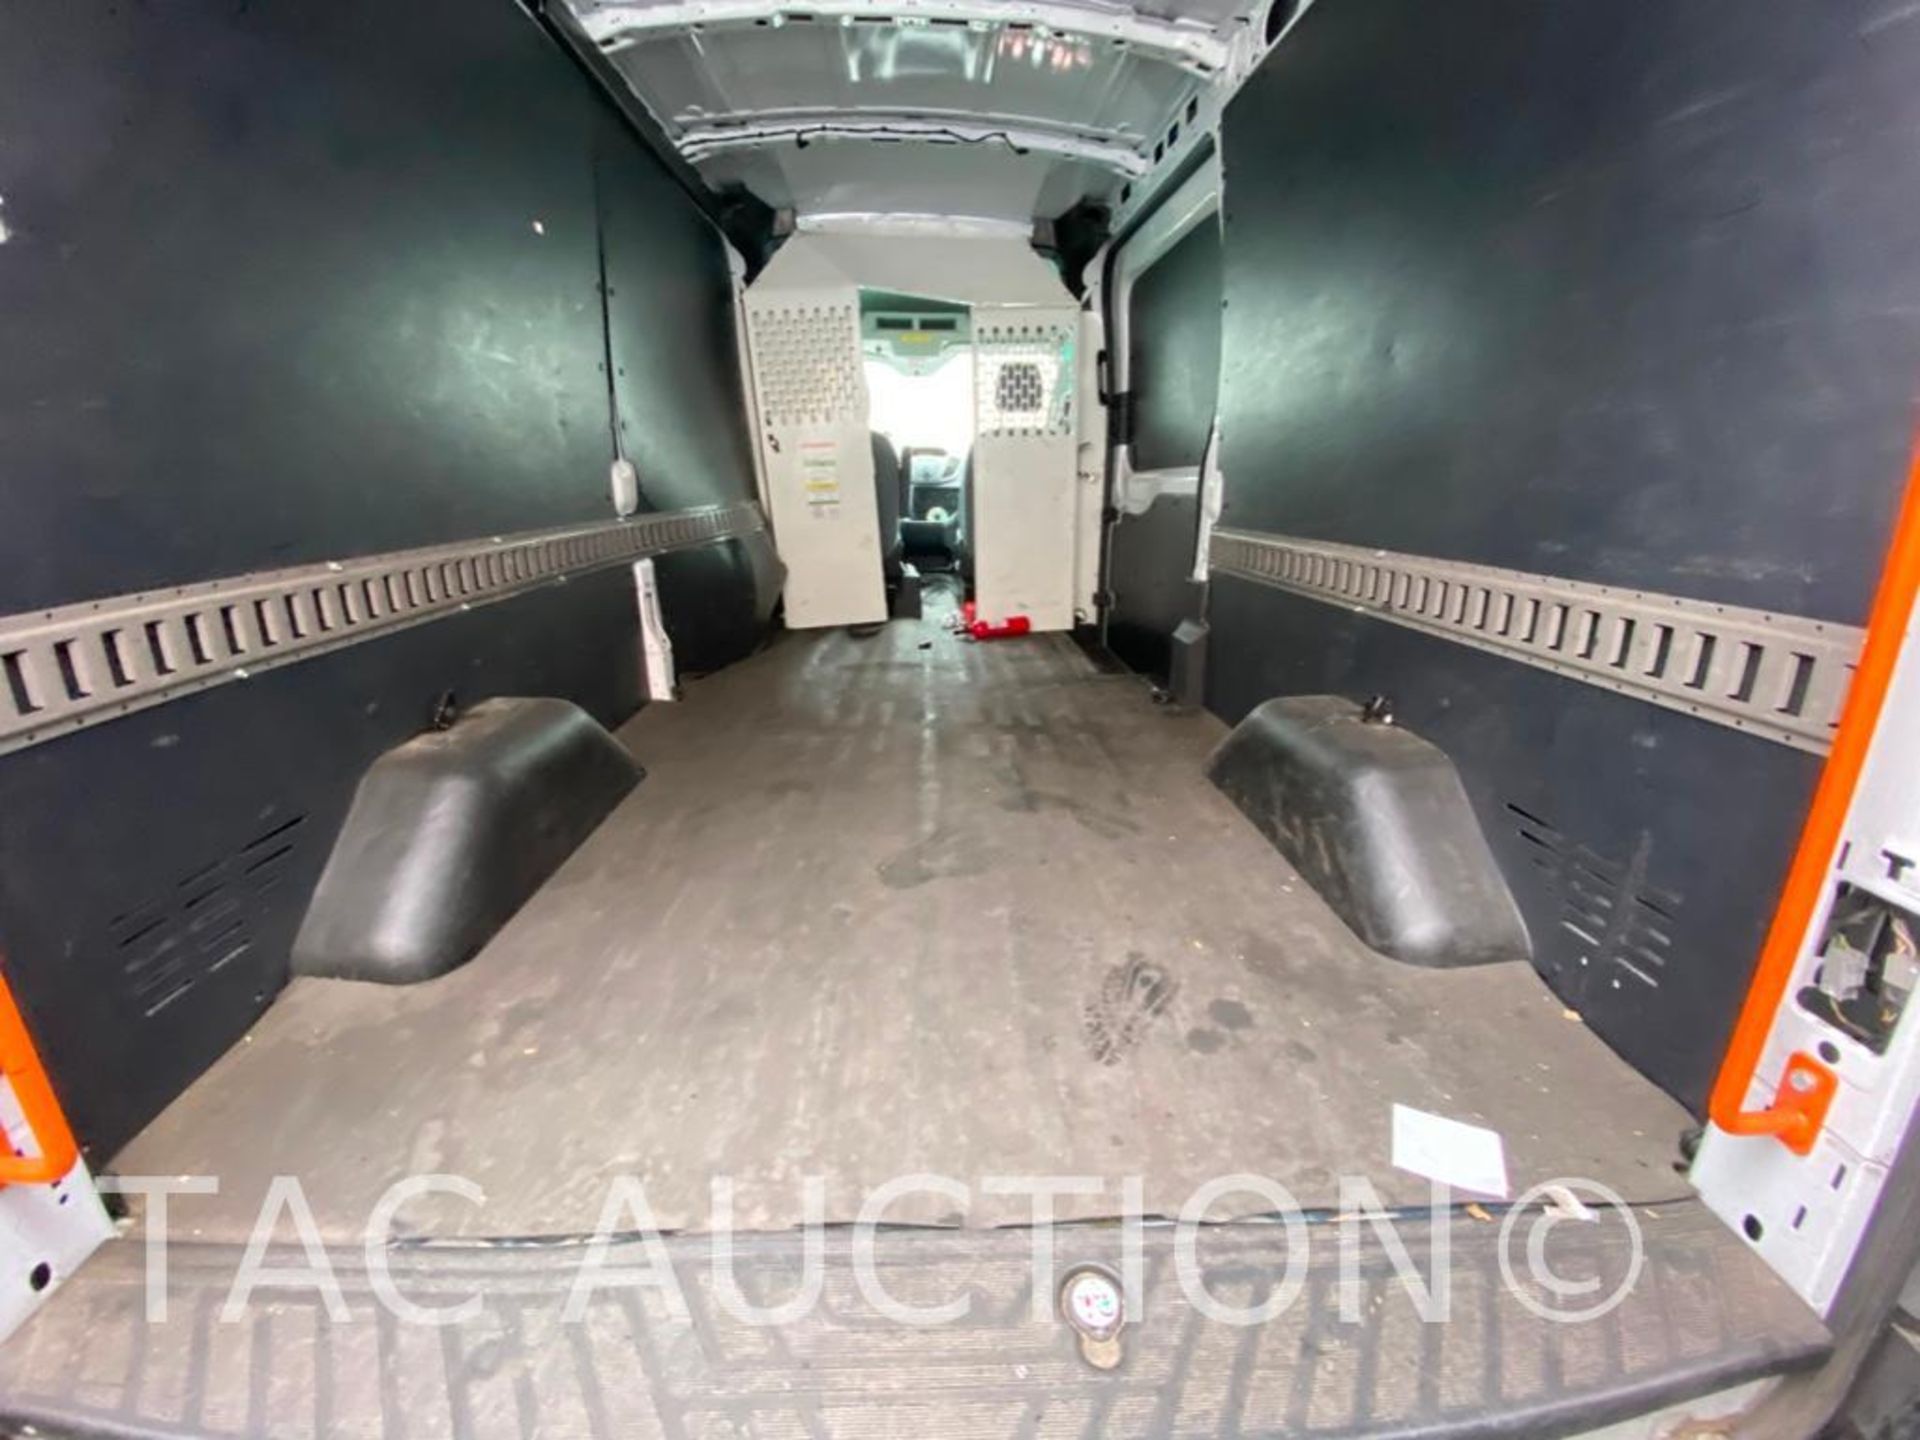 2019 Ford Transit 150 Cargo Van - Image 52 of 80